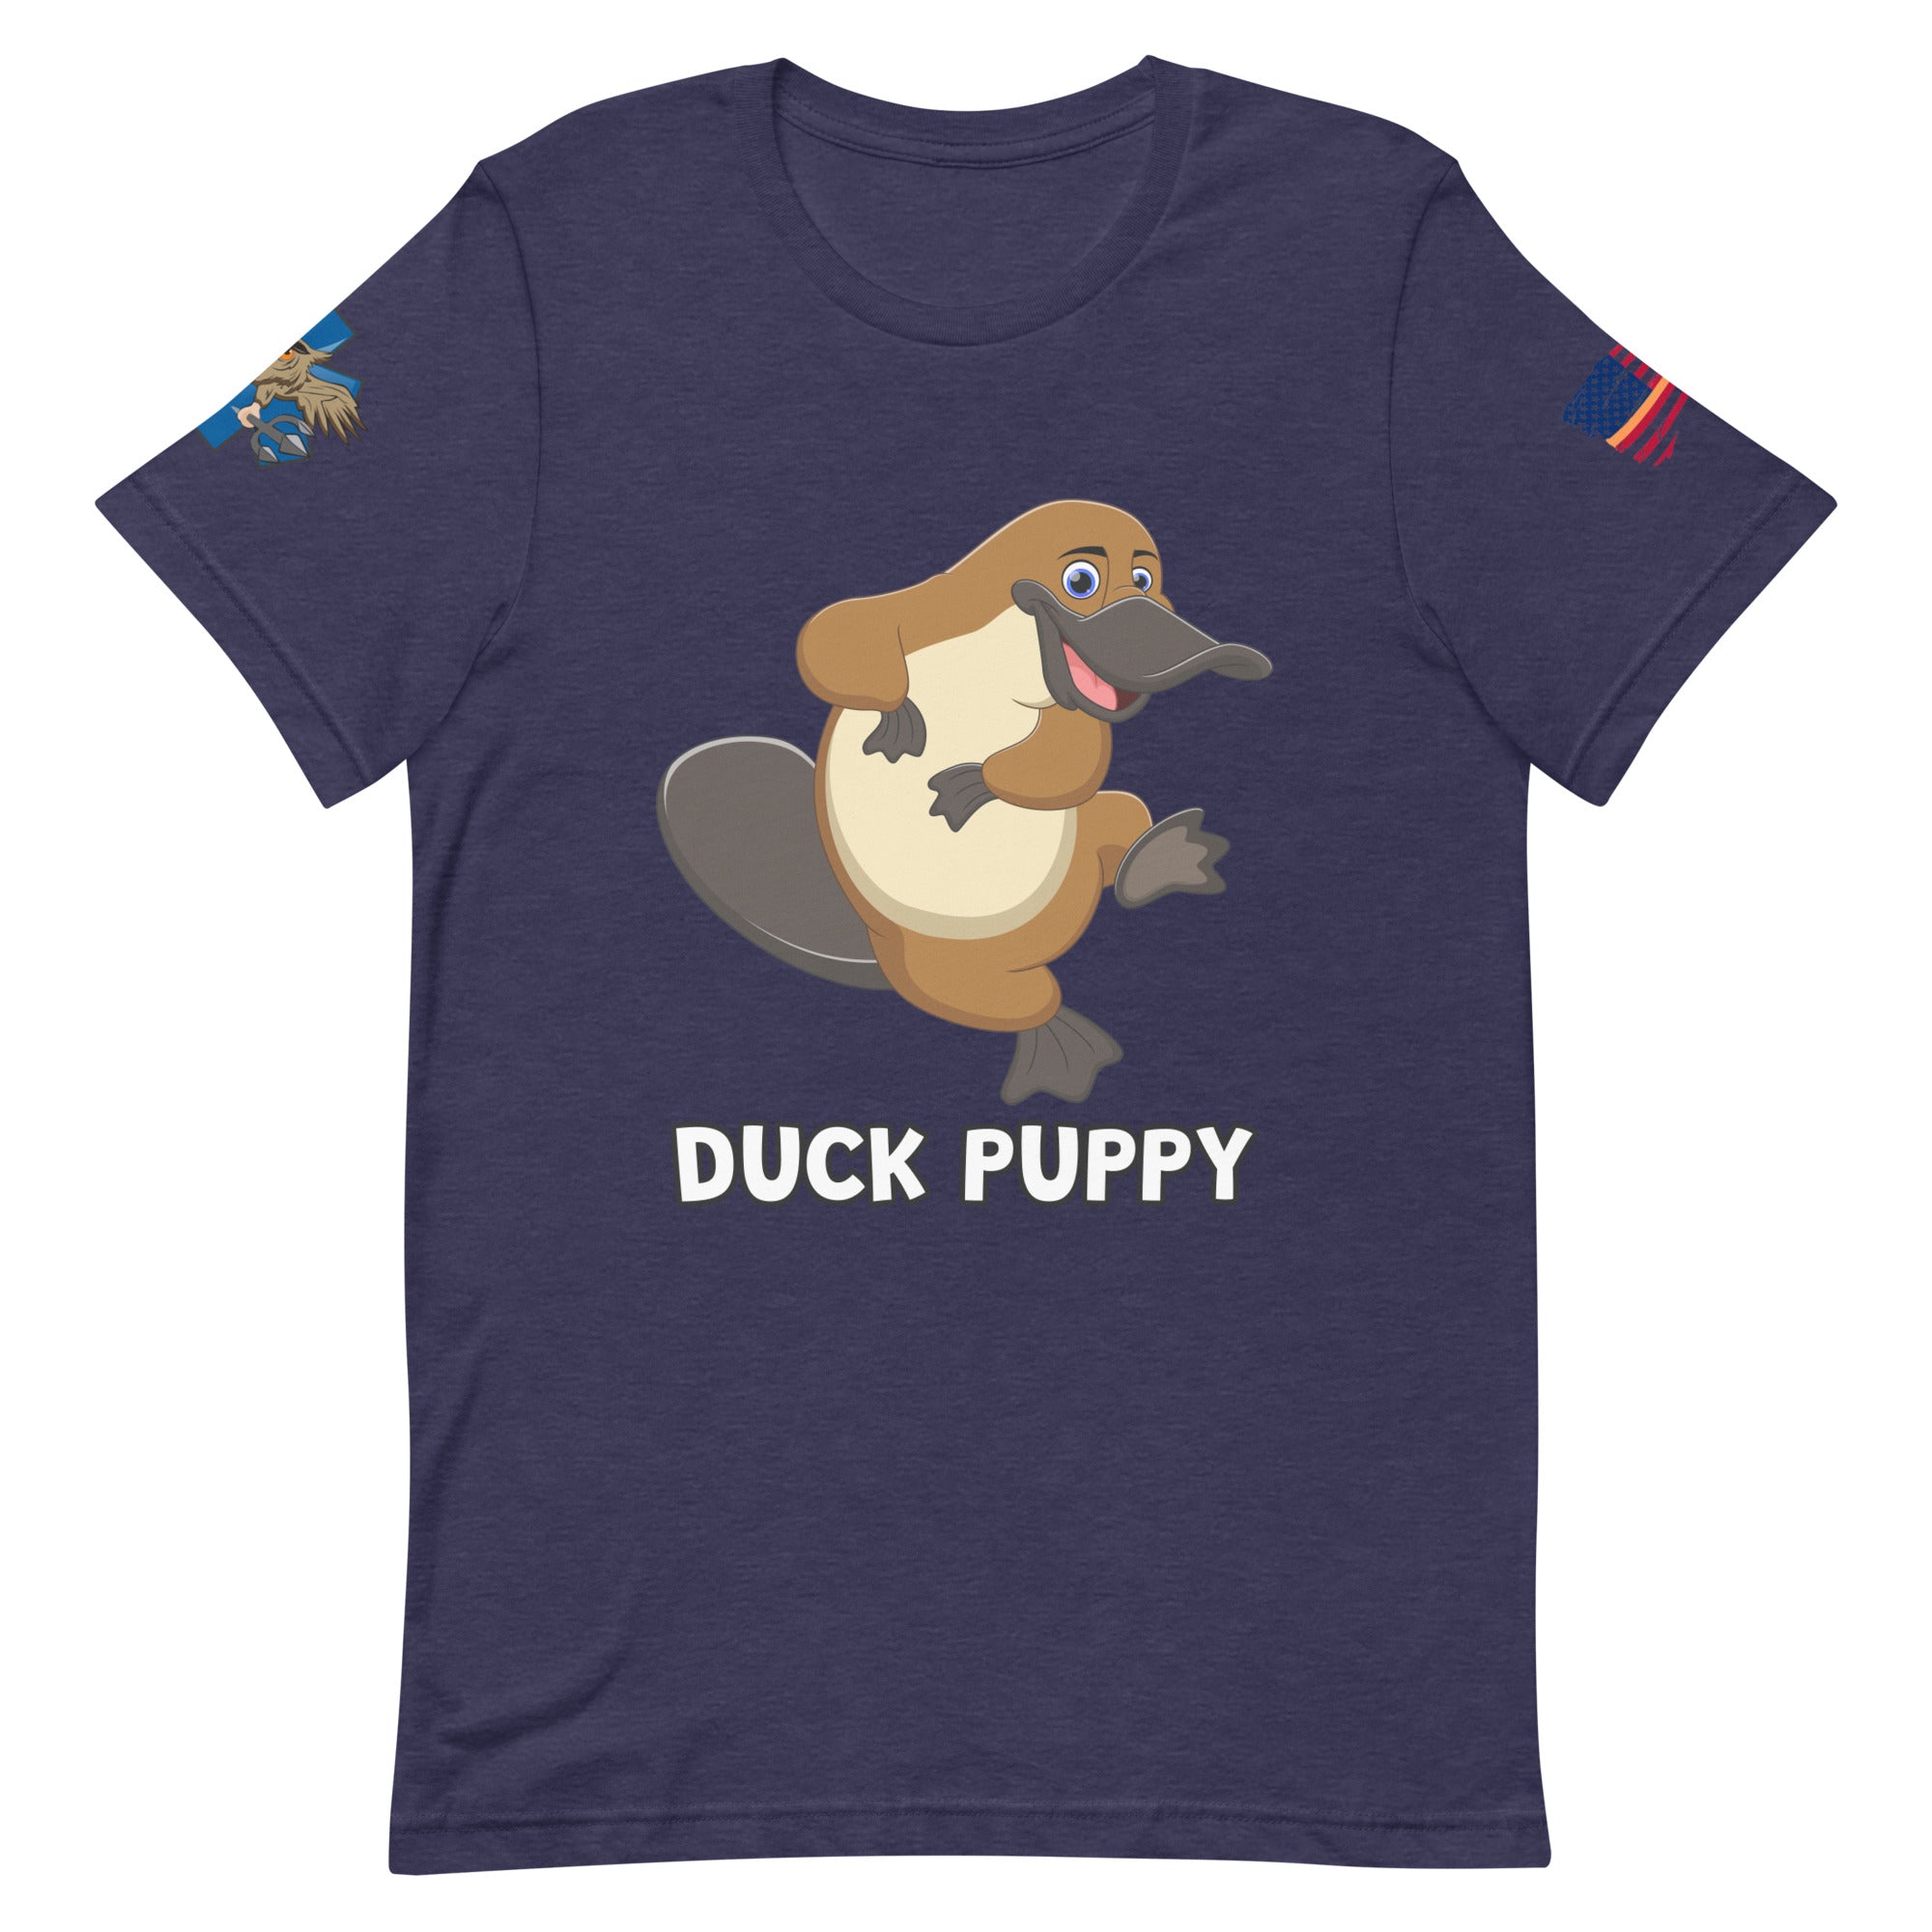 'Duck Puppy' t-shirt